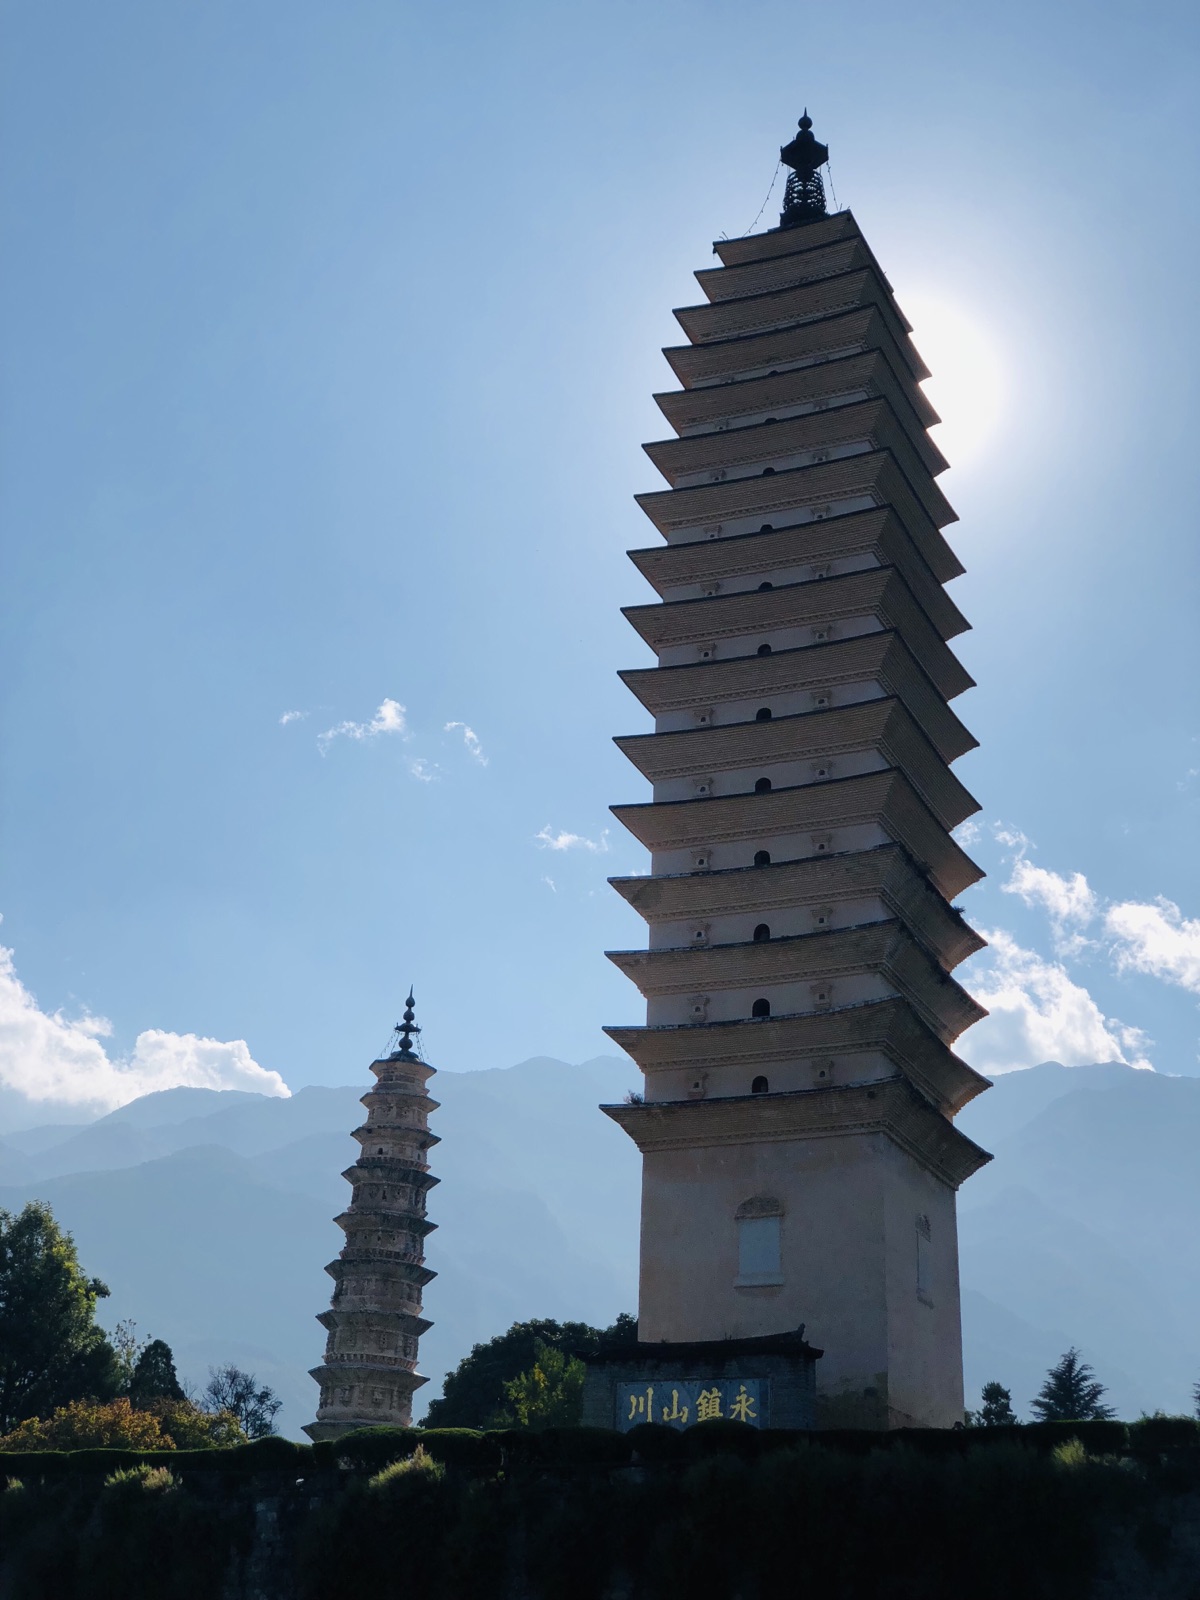 圣寺三塔位于大理古城西北部1.5公里处，西对苍山应乐峰，东对洱海。来这